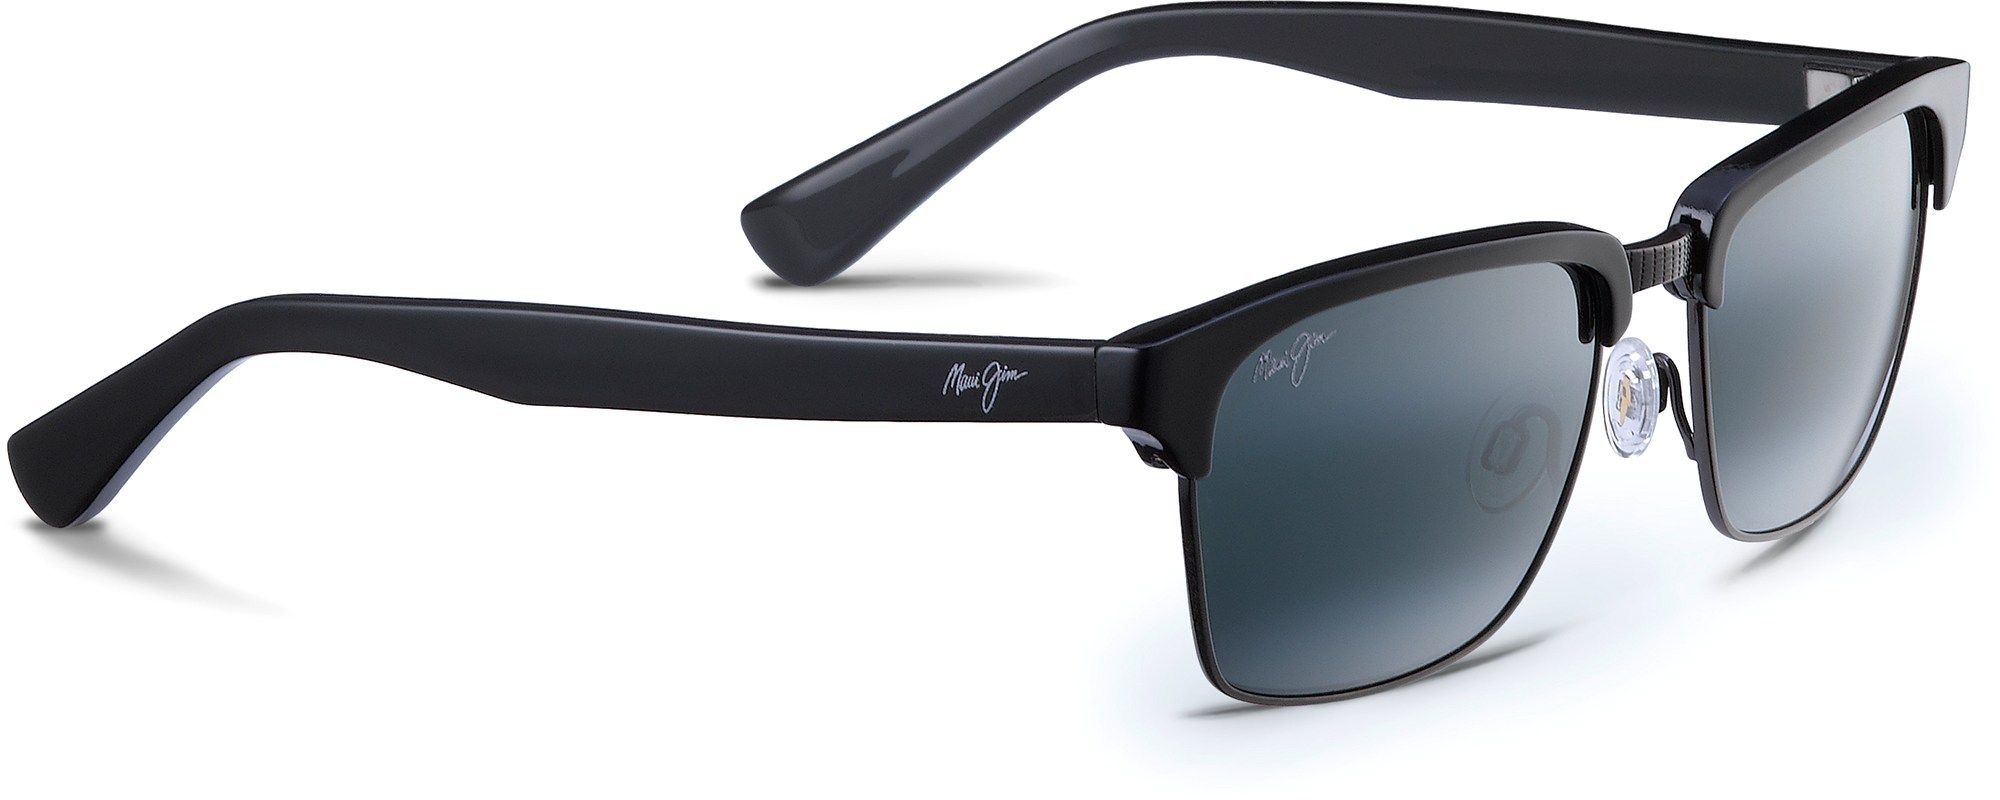 Поляризованные солнцезащитные очки Kawika — мужские Maui Jim, черный